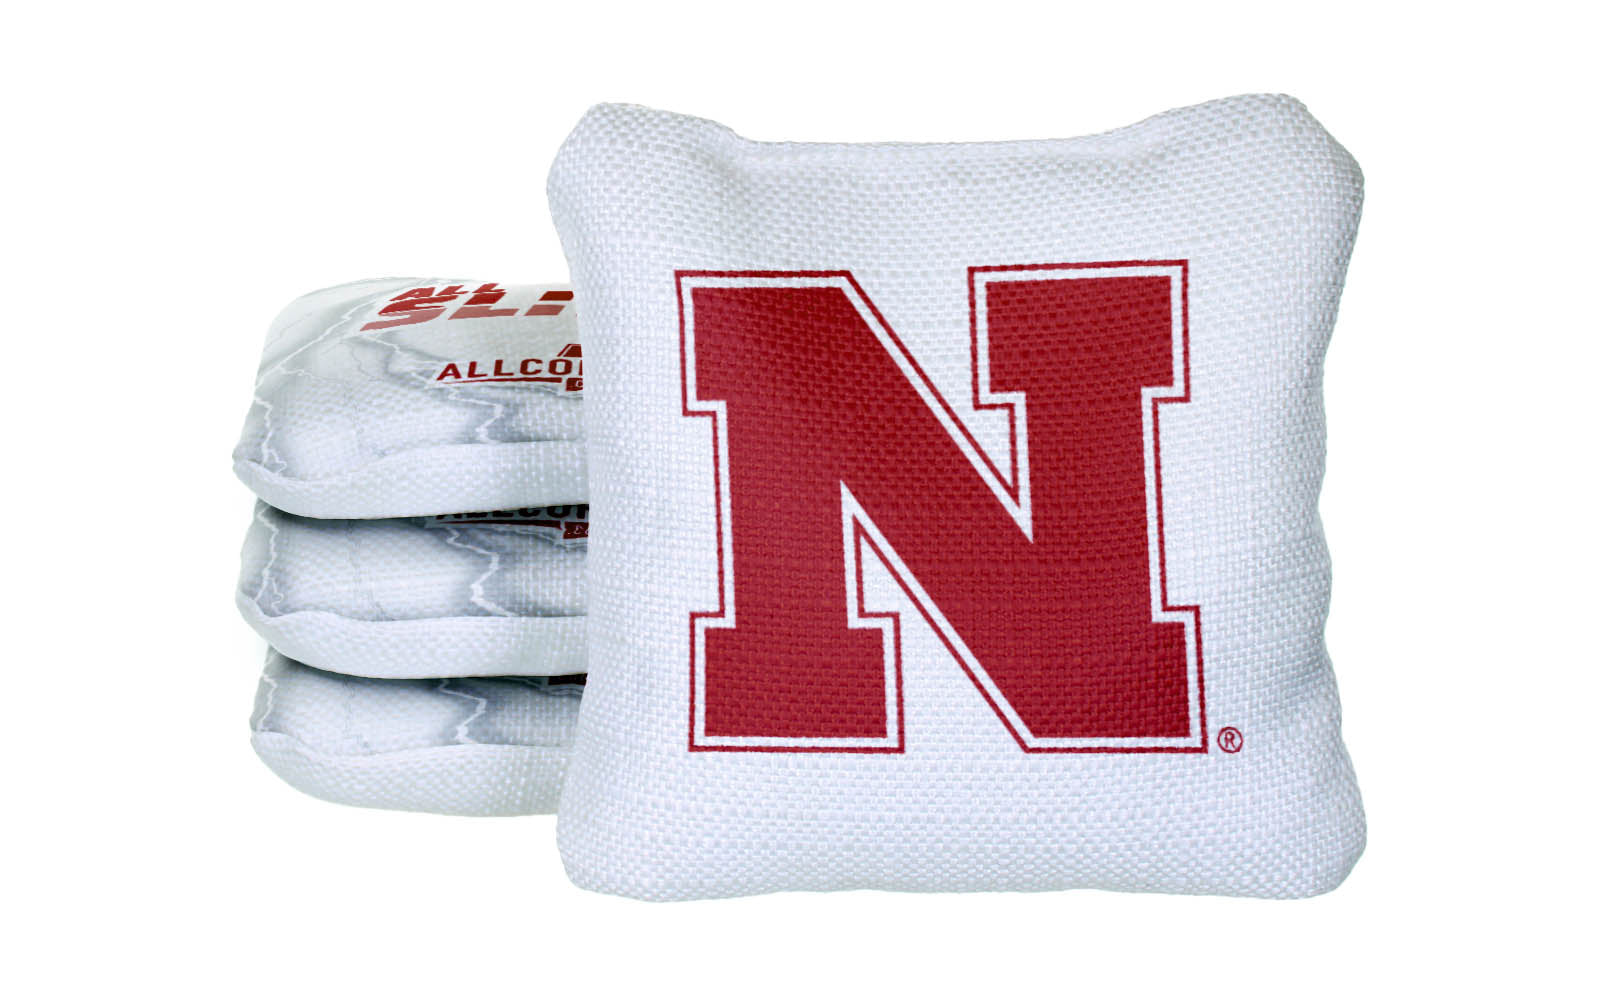 Officially Licensed Collegiate Cornhole Bags - AllCornhole All-Slide 2.0 - Set of 4 - University of Nebraska